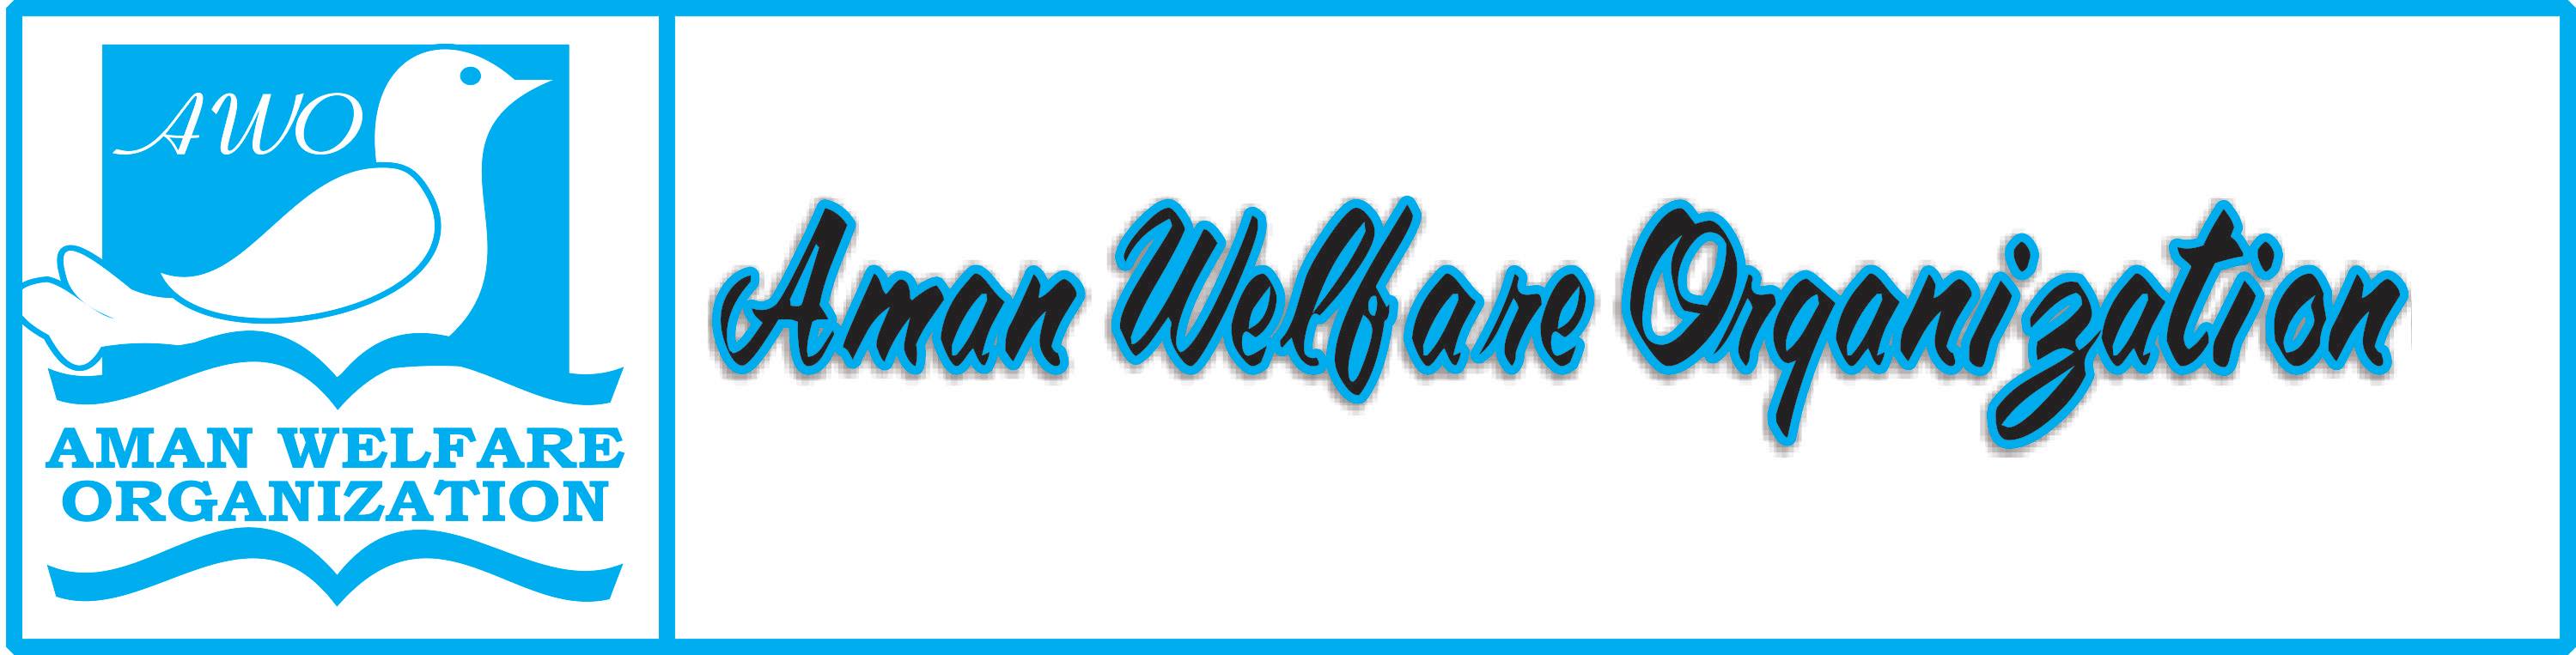 Aman Welfare Organization 